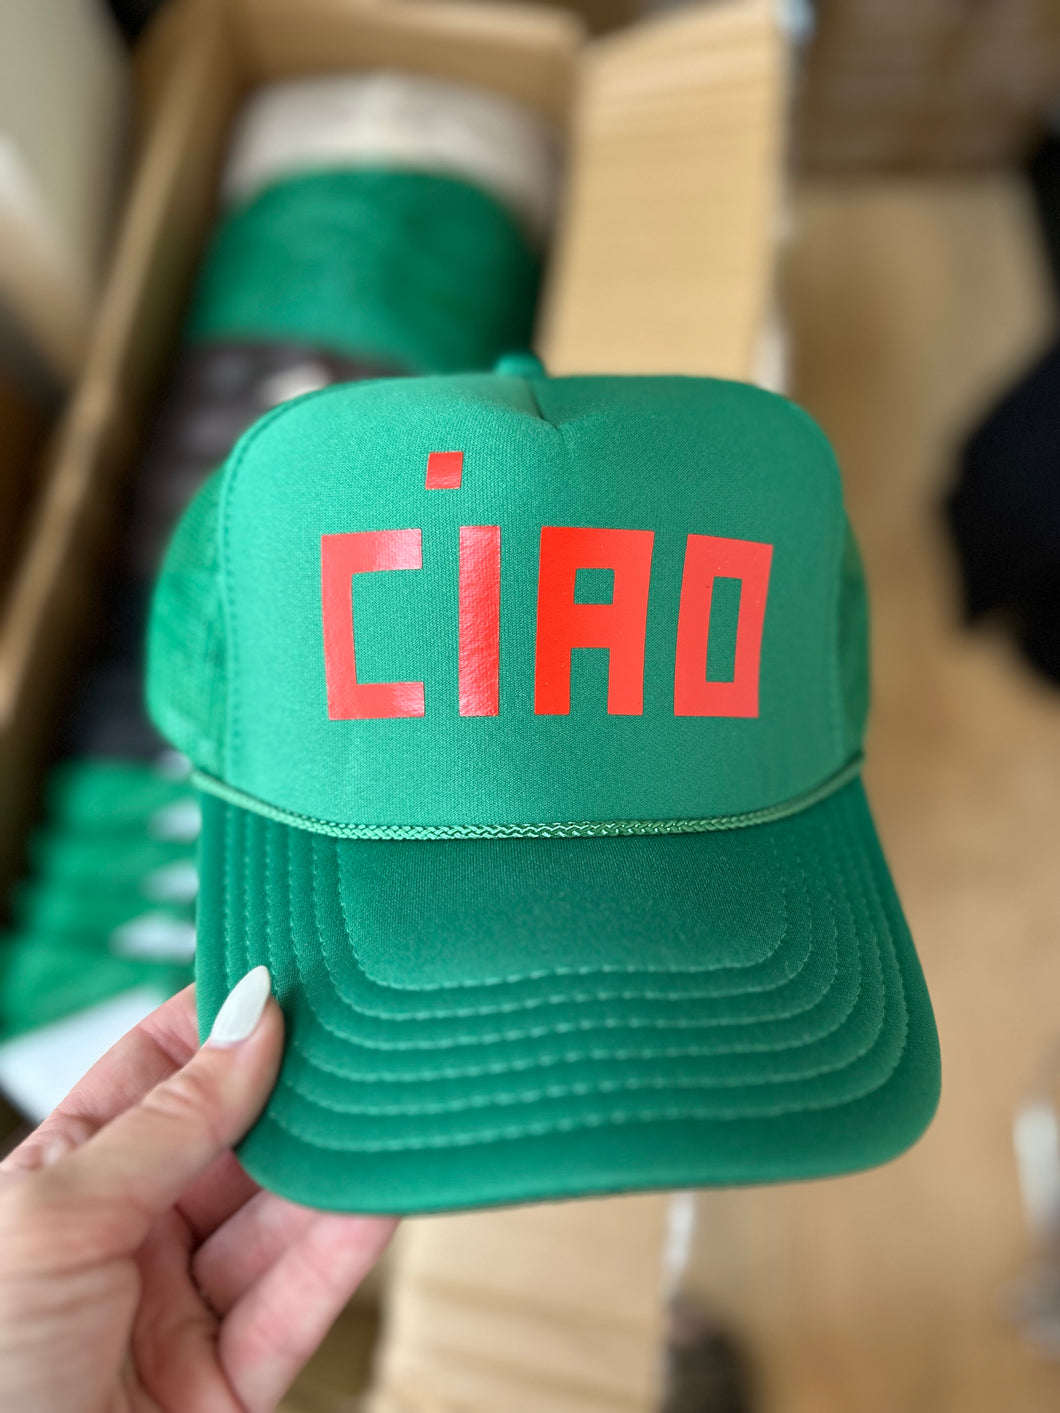 CIAO Trucker Hat